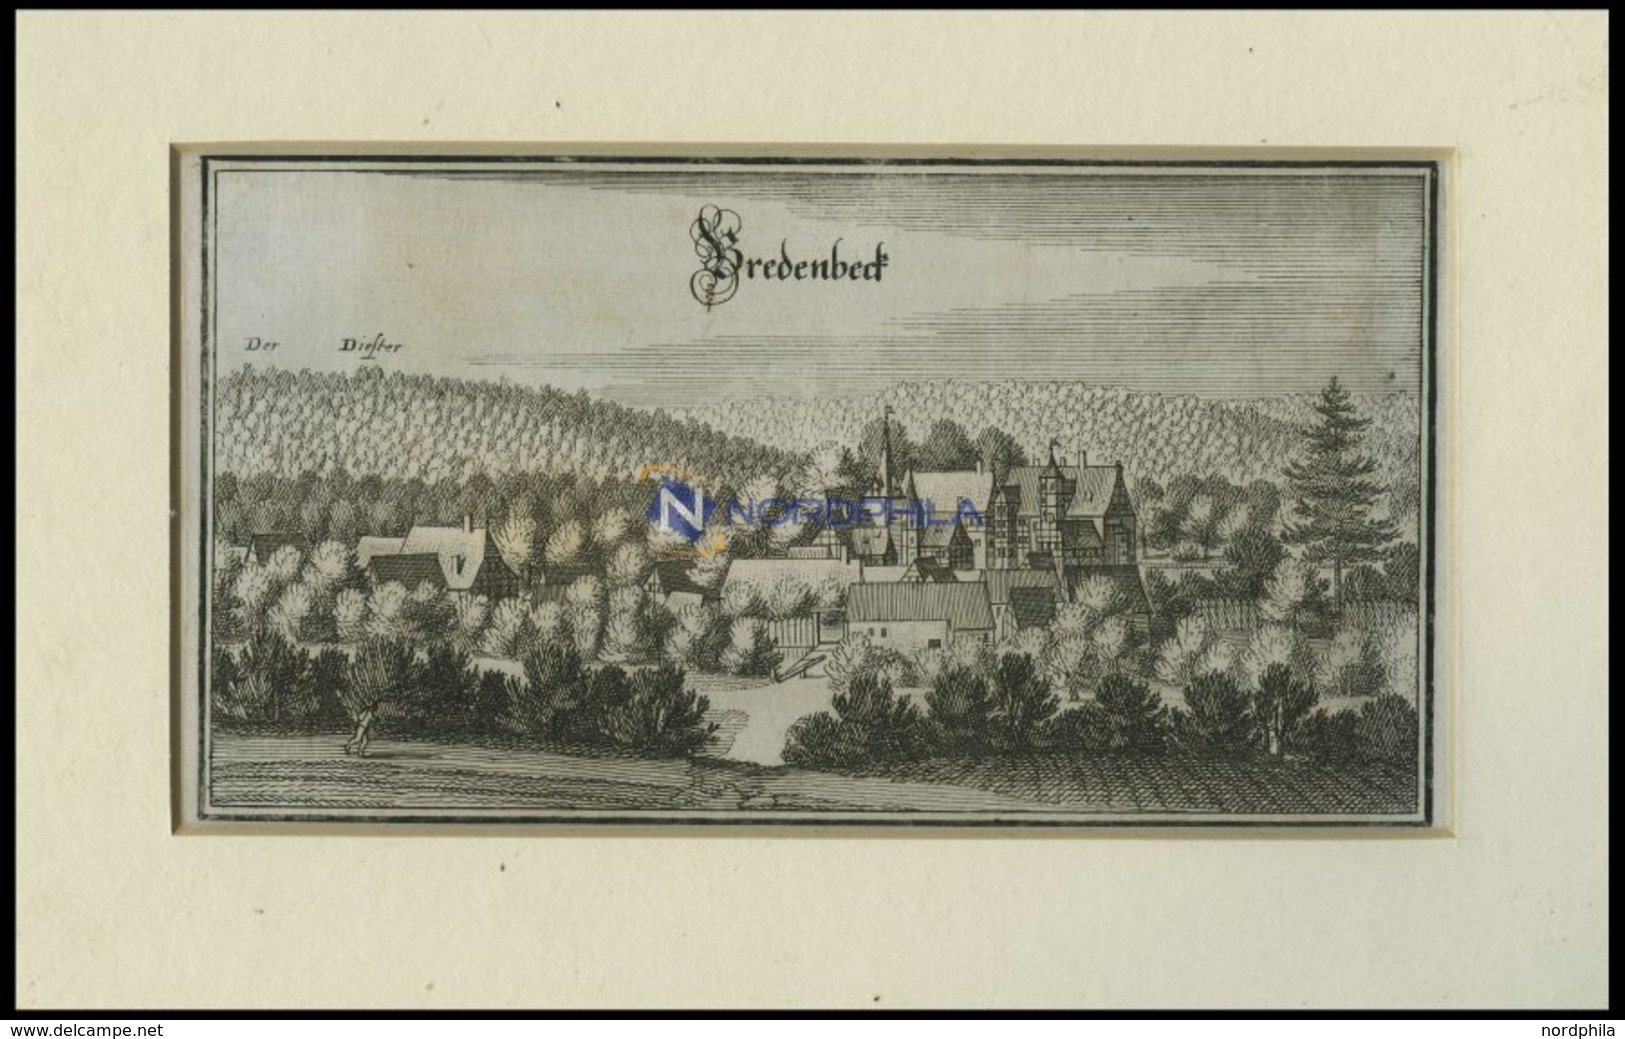 BREDENBECK, Gesamtansicht, Kupferstich Von Merian Um 1645 - Litografía